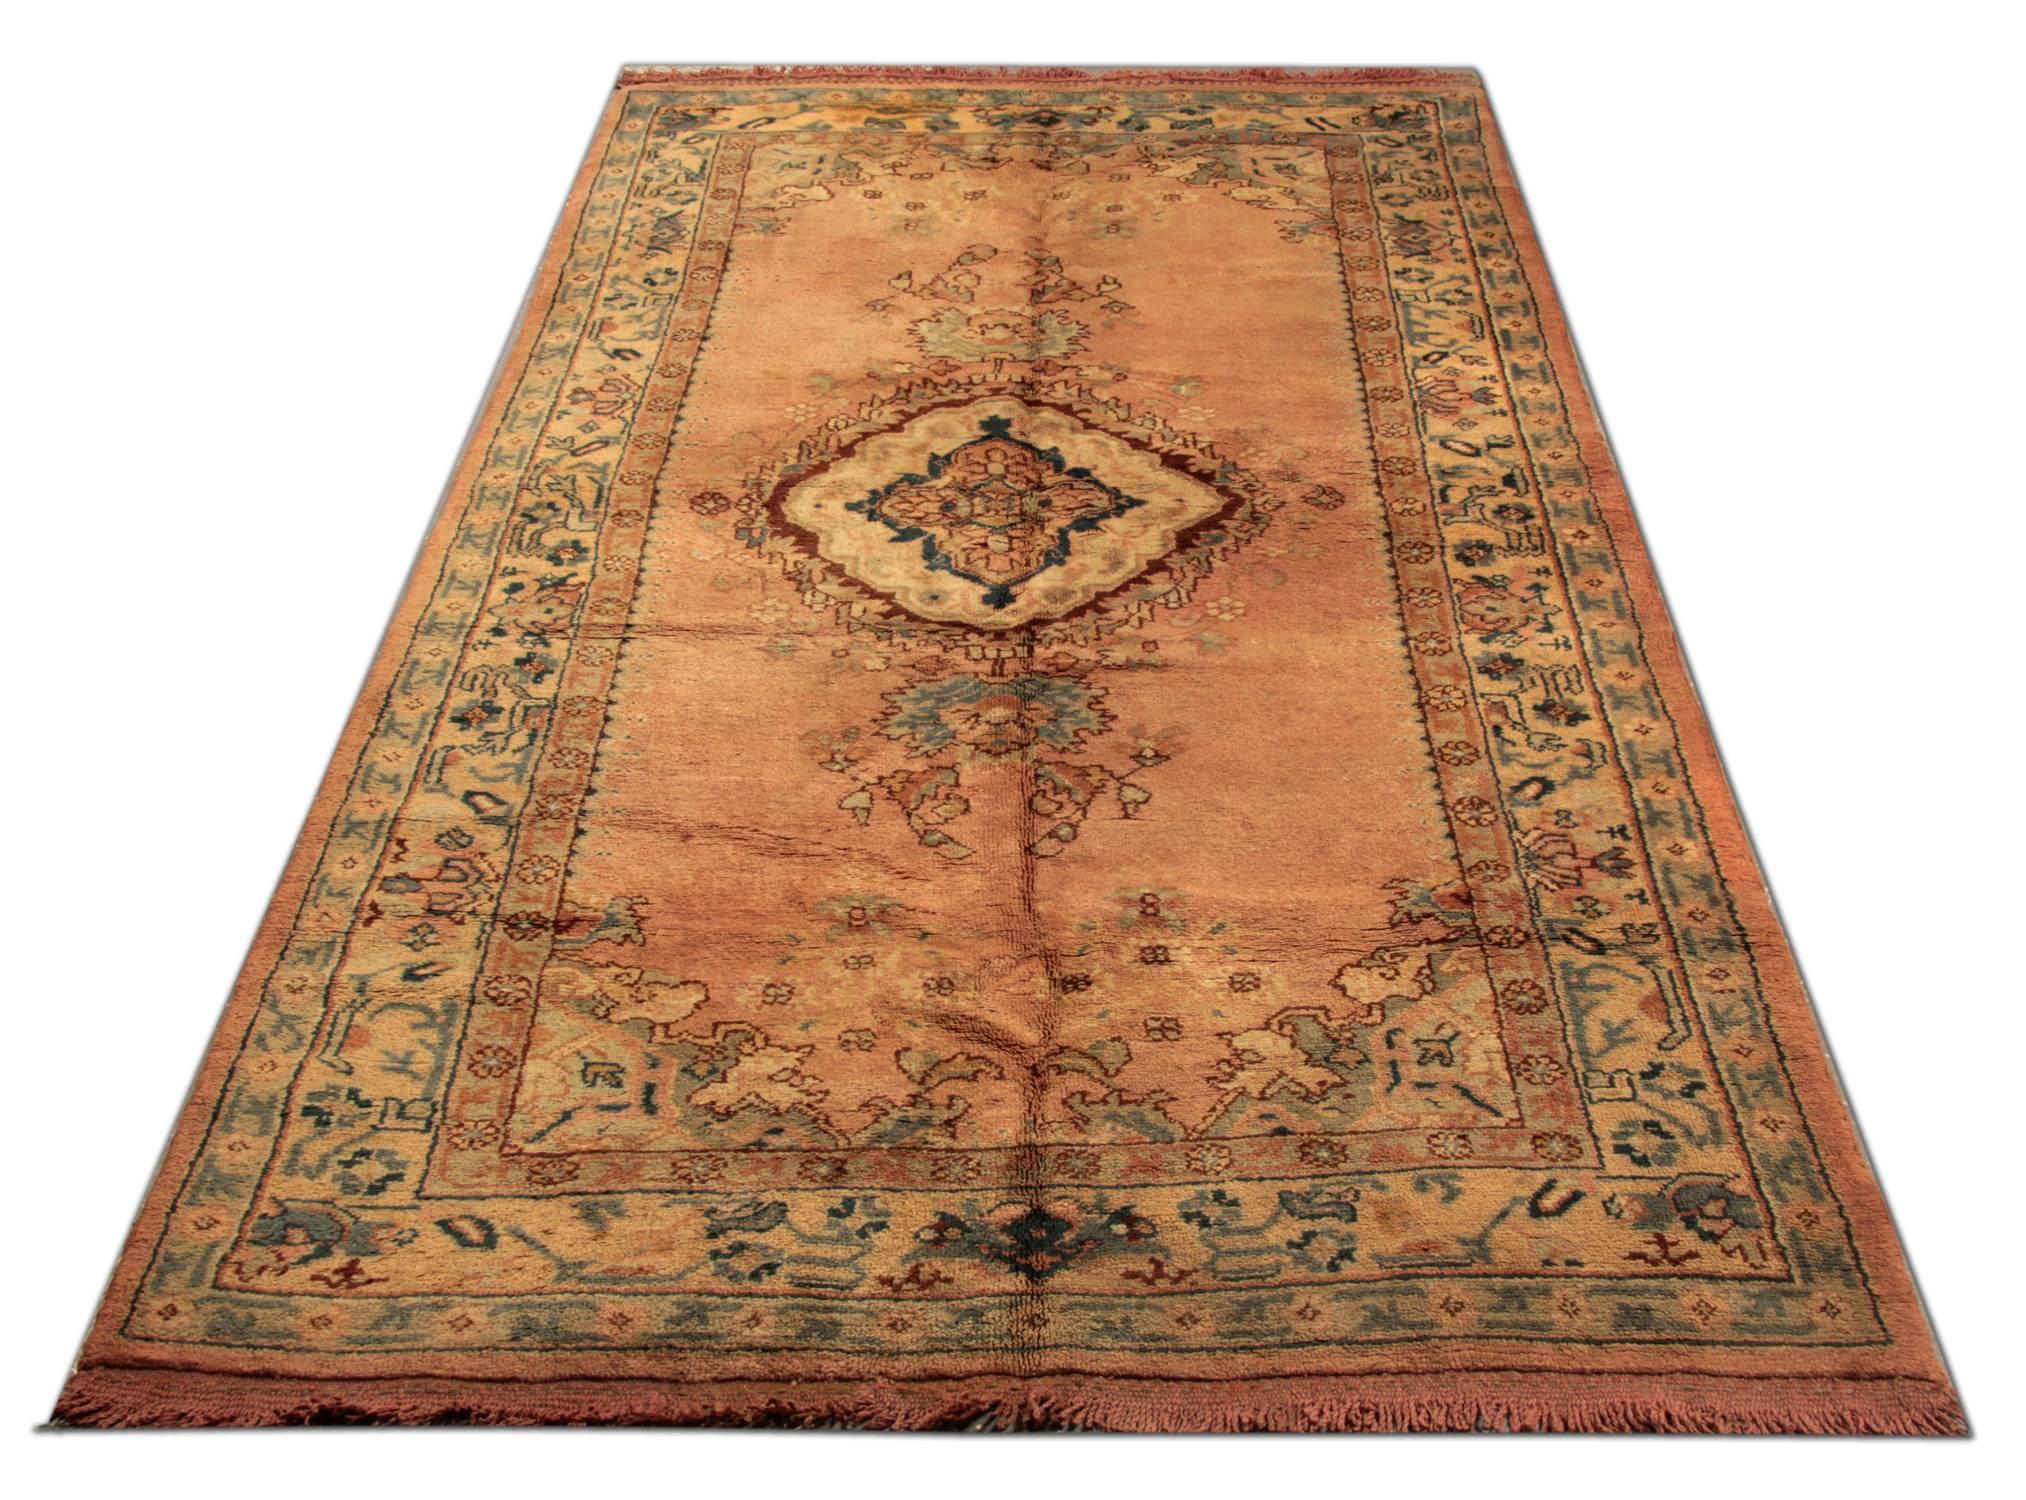 Dieser Oushak-Teppich ist ein schöner handgeknüpfter türkischer Anatolien-Teppich mit einem sehr eleganten geometrischen Stammesmuster. Es ist aus reiner Wolle und leuchtenden Naturfarben hergestellt. Die Kombination von Rostrot und Gold ergibt